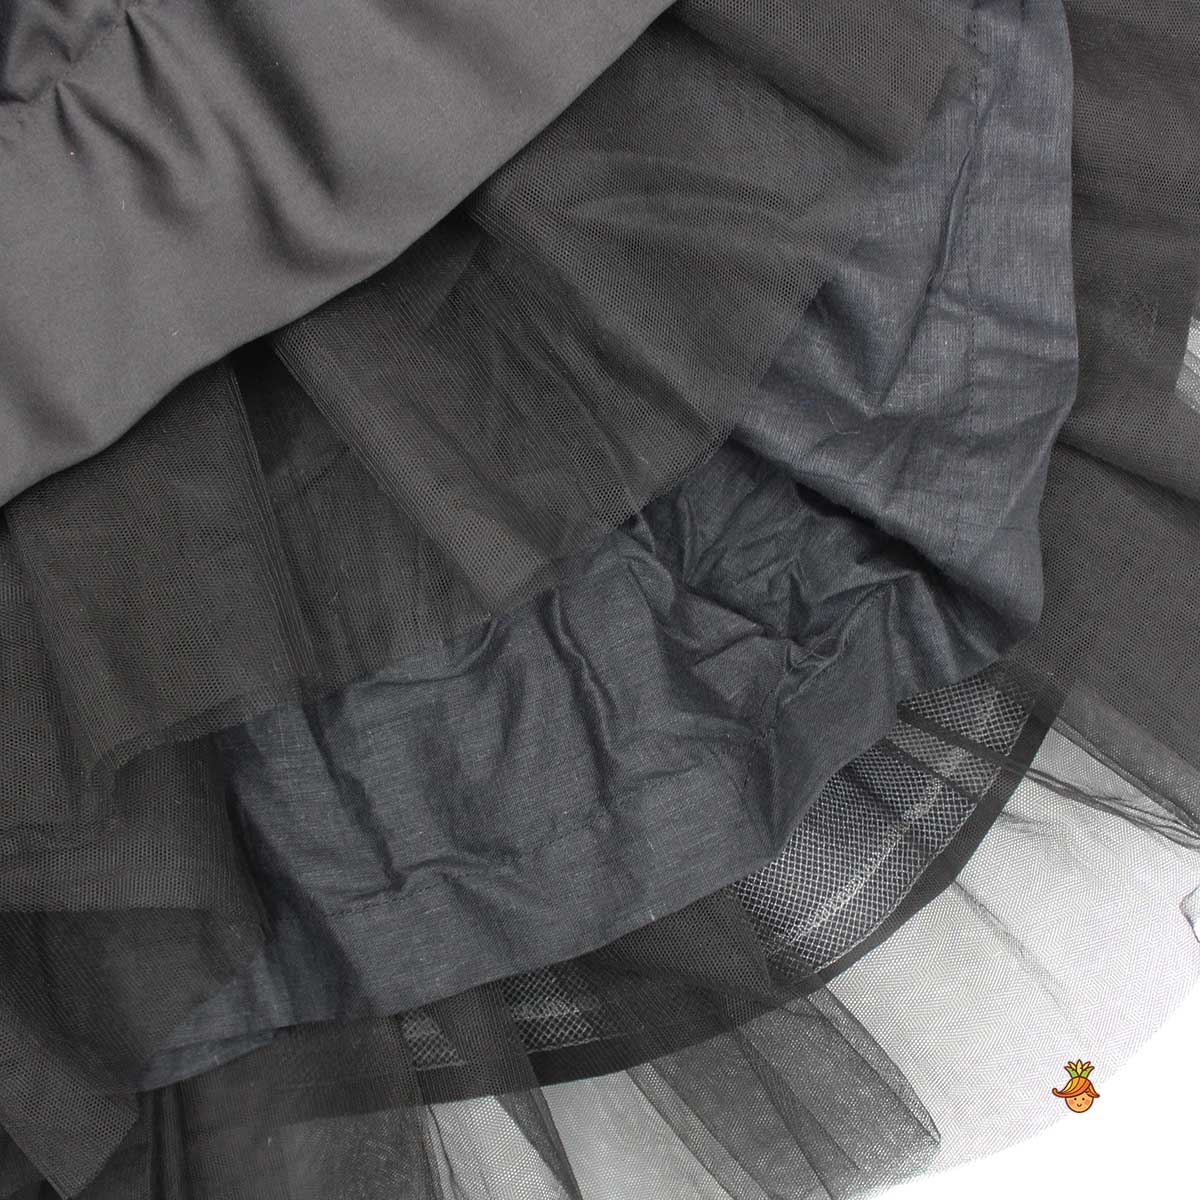 Elegant Black Sequined Bow Adorned Dress